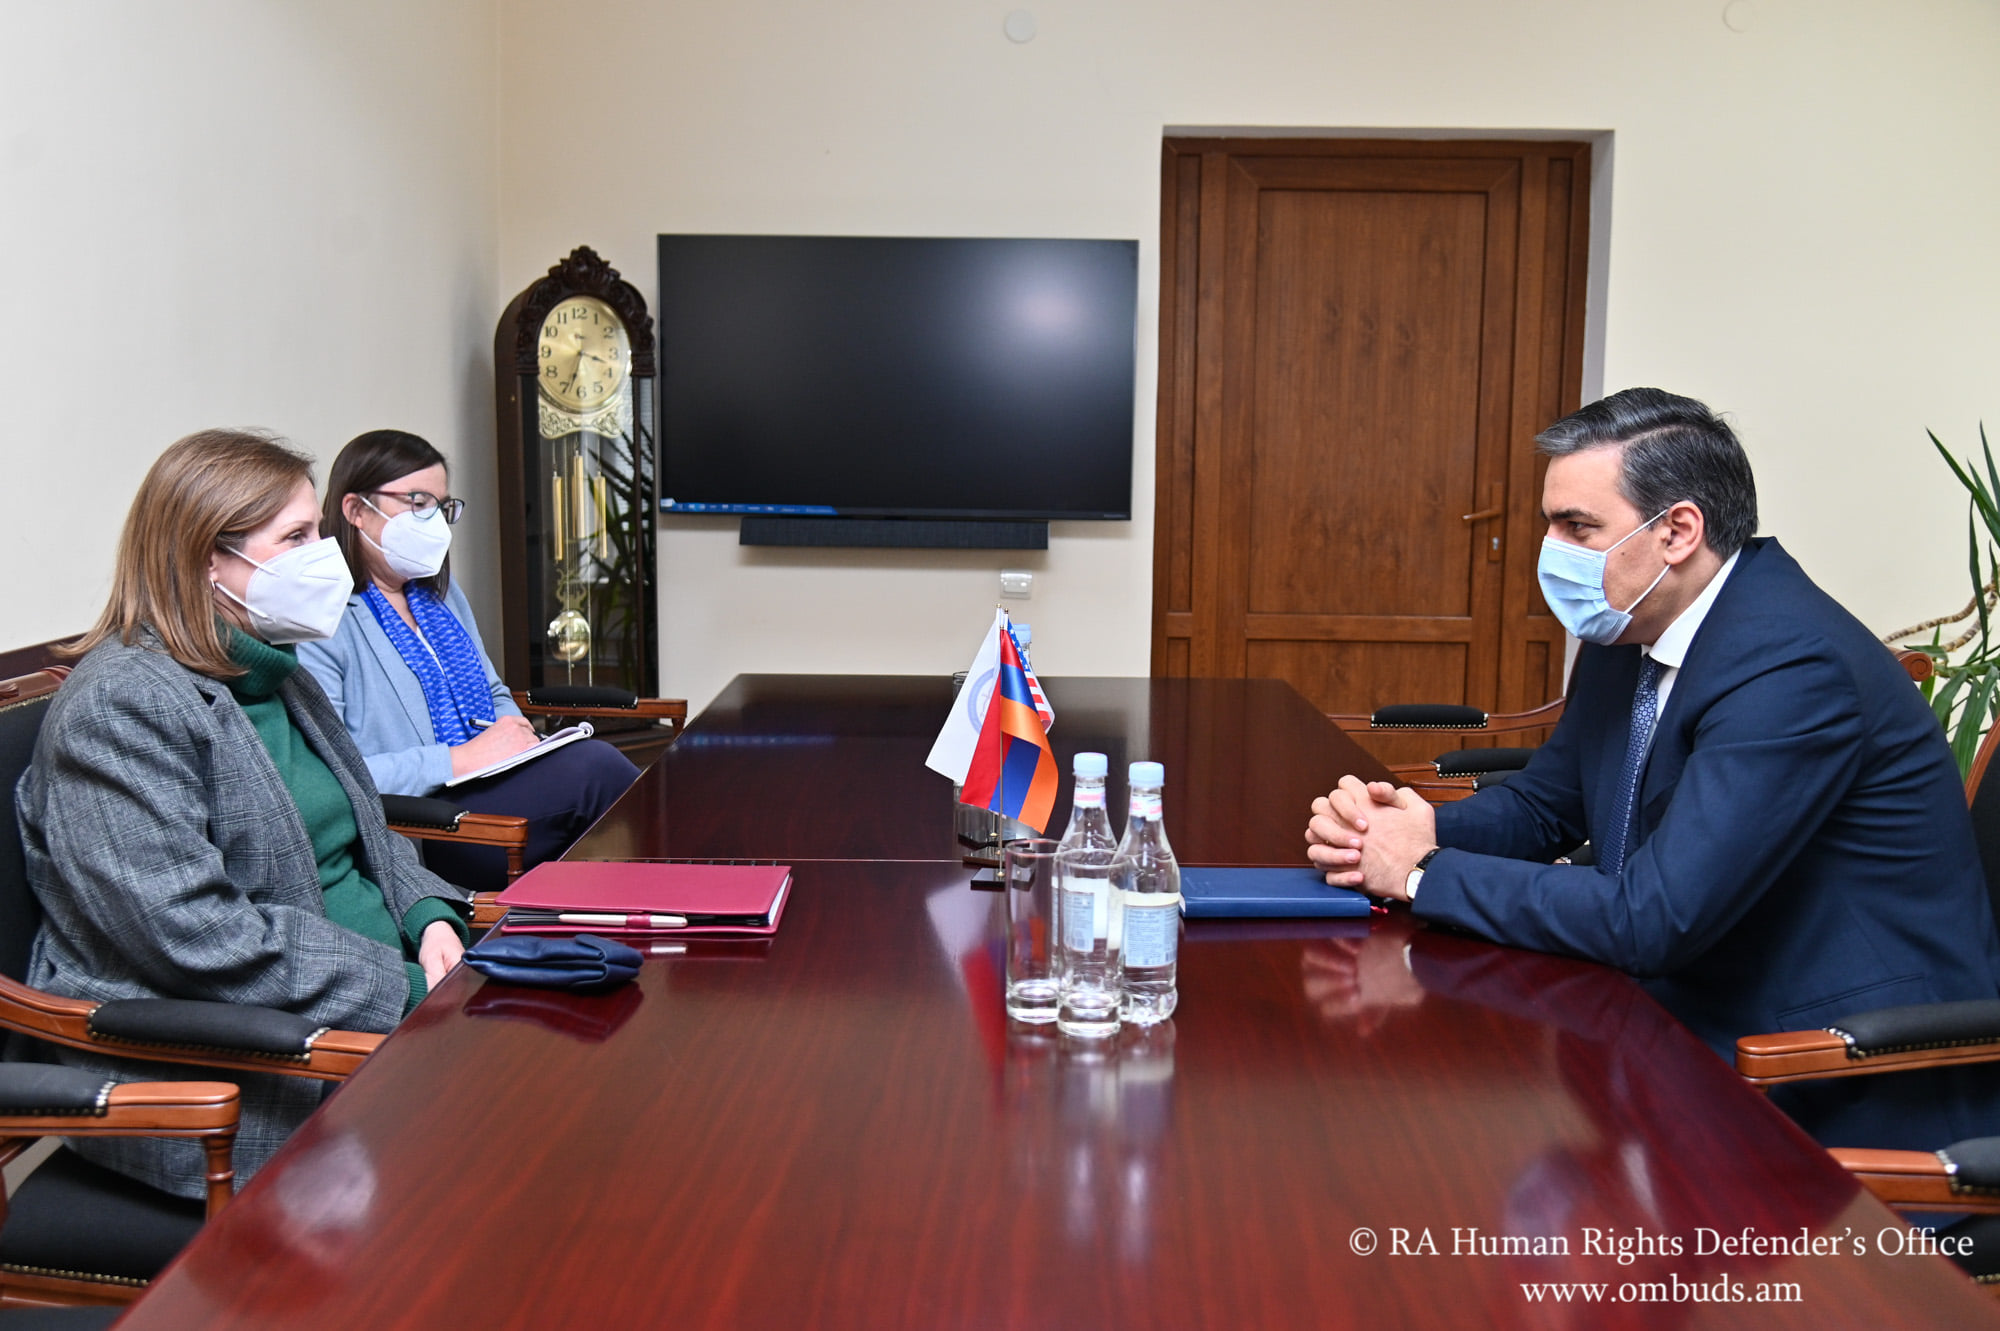 Арман Татоян и посол Линн Трейси обсудили вопросы относительно защиты прав человека